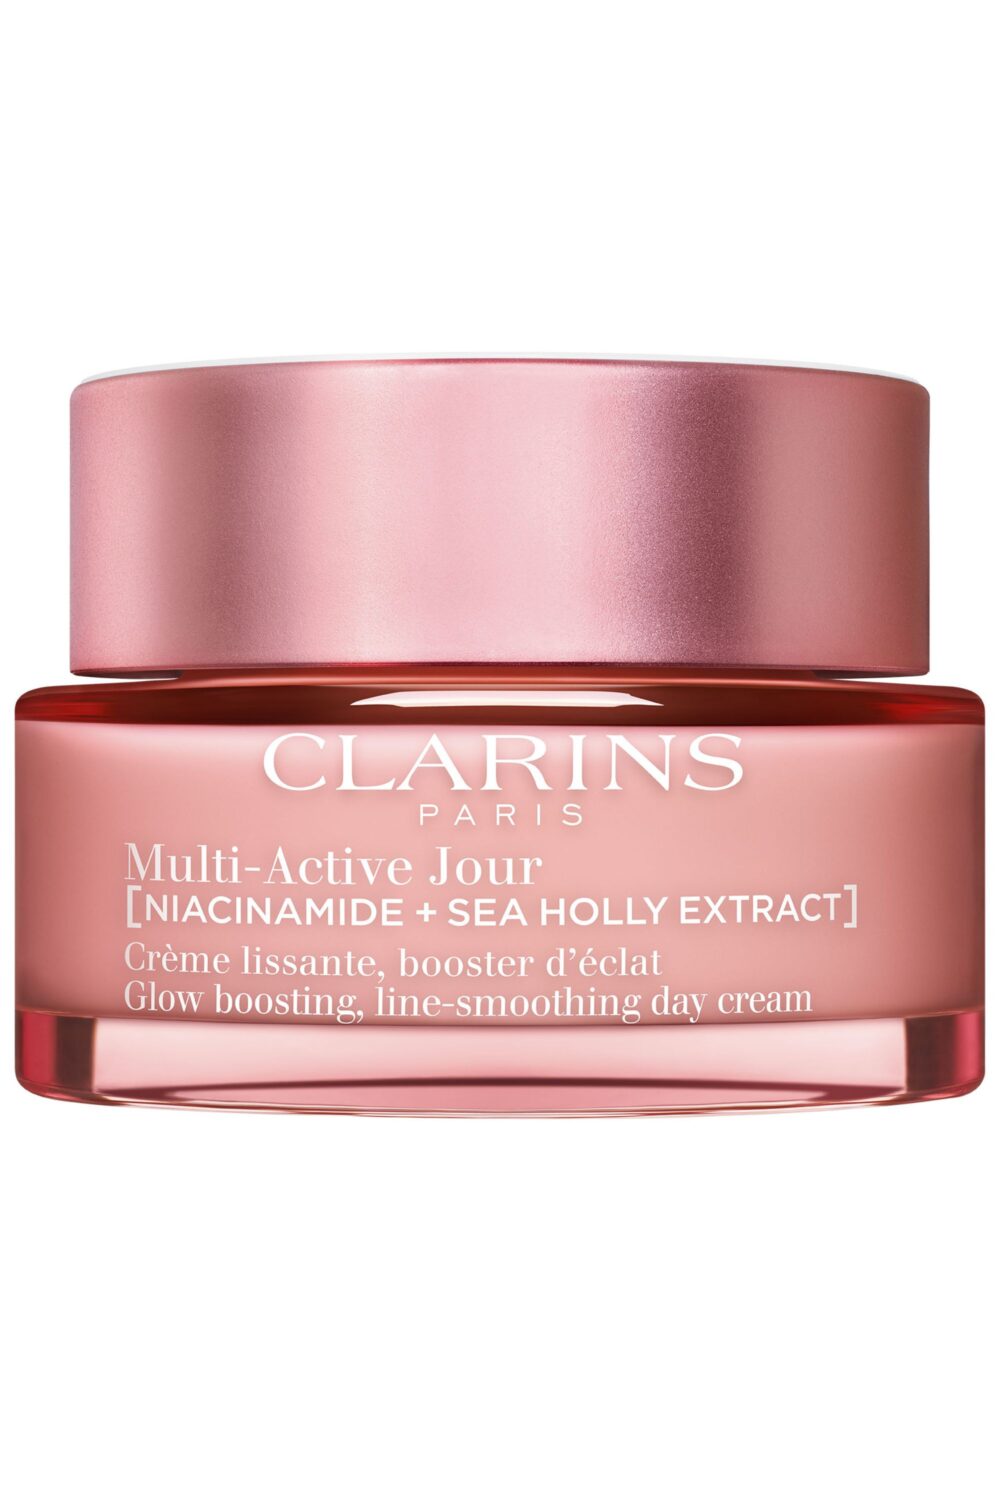 Clarins - Crème lissante Multi-Active Jour peaux sèches